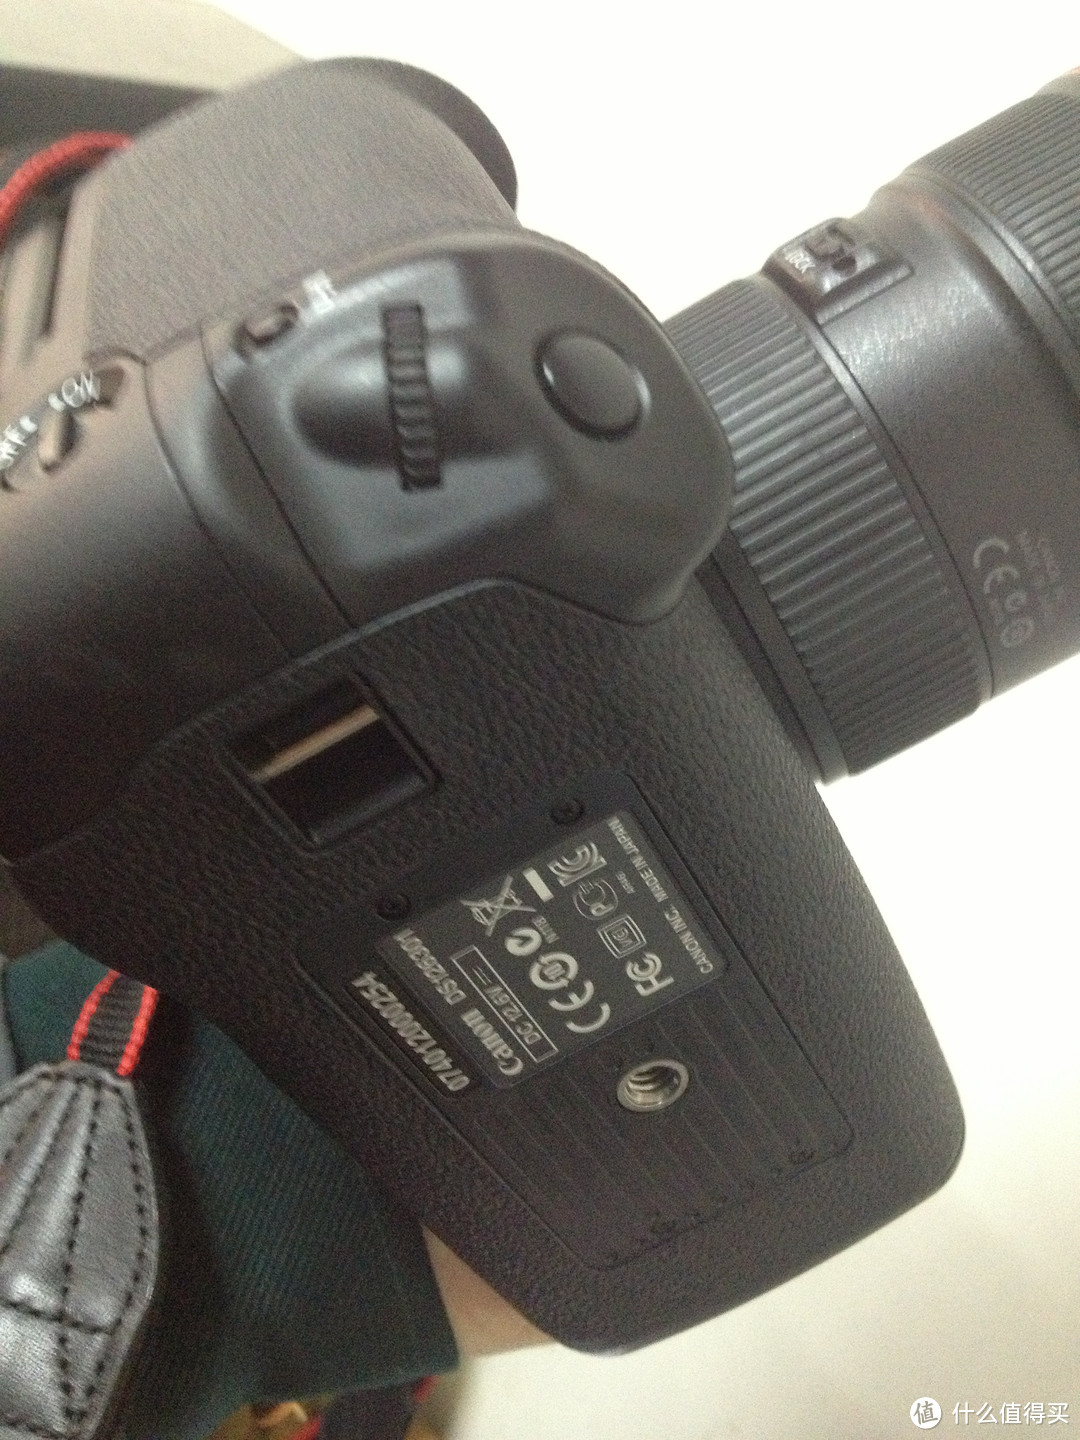 Canon 佳能 EOS 1D X 单反机身 + EF 24-70mm f/2.8L II USM 标准变焦镜头，无参数无对比无评测的三无晒单！！